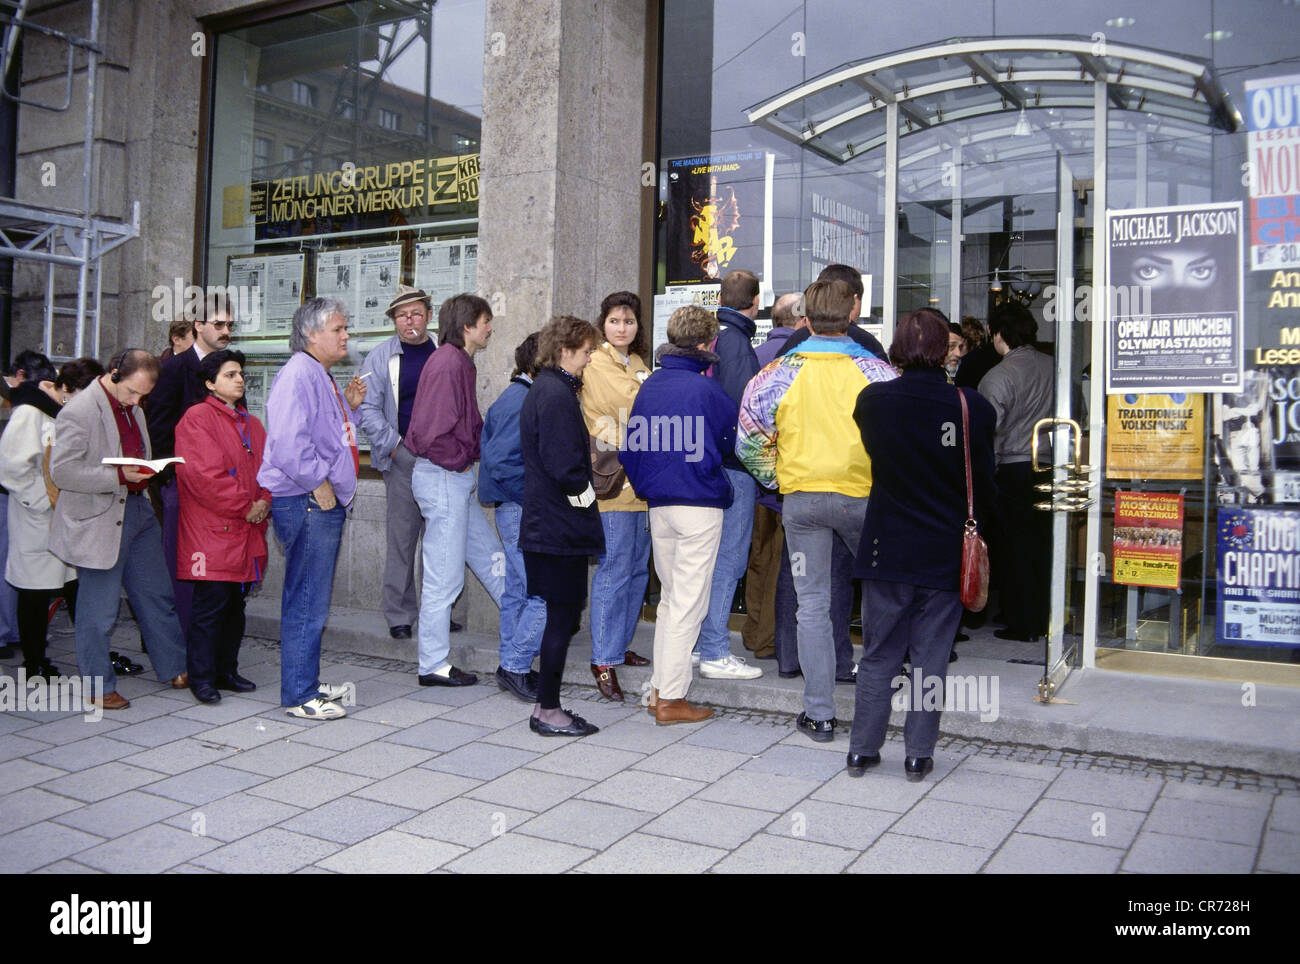 Jackson, Michael, 29.8.1958 - 25.6.2009, US-Popsänger, Fans stehen in einer Warteschlange, um Tickets für sein Konzert in München, 26.3.1992, zu bekommen Stockfoto